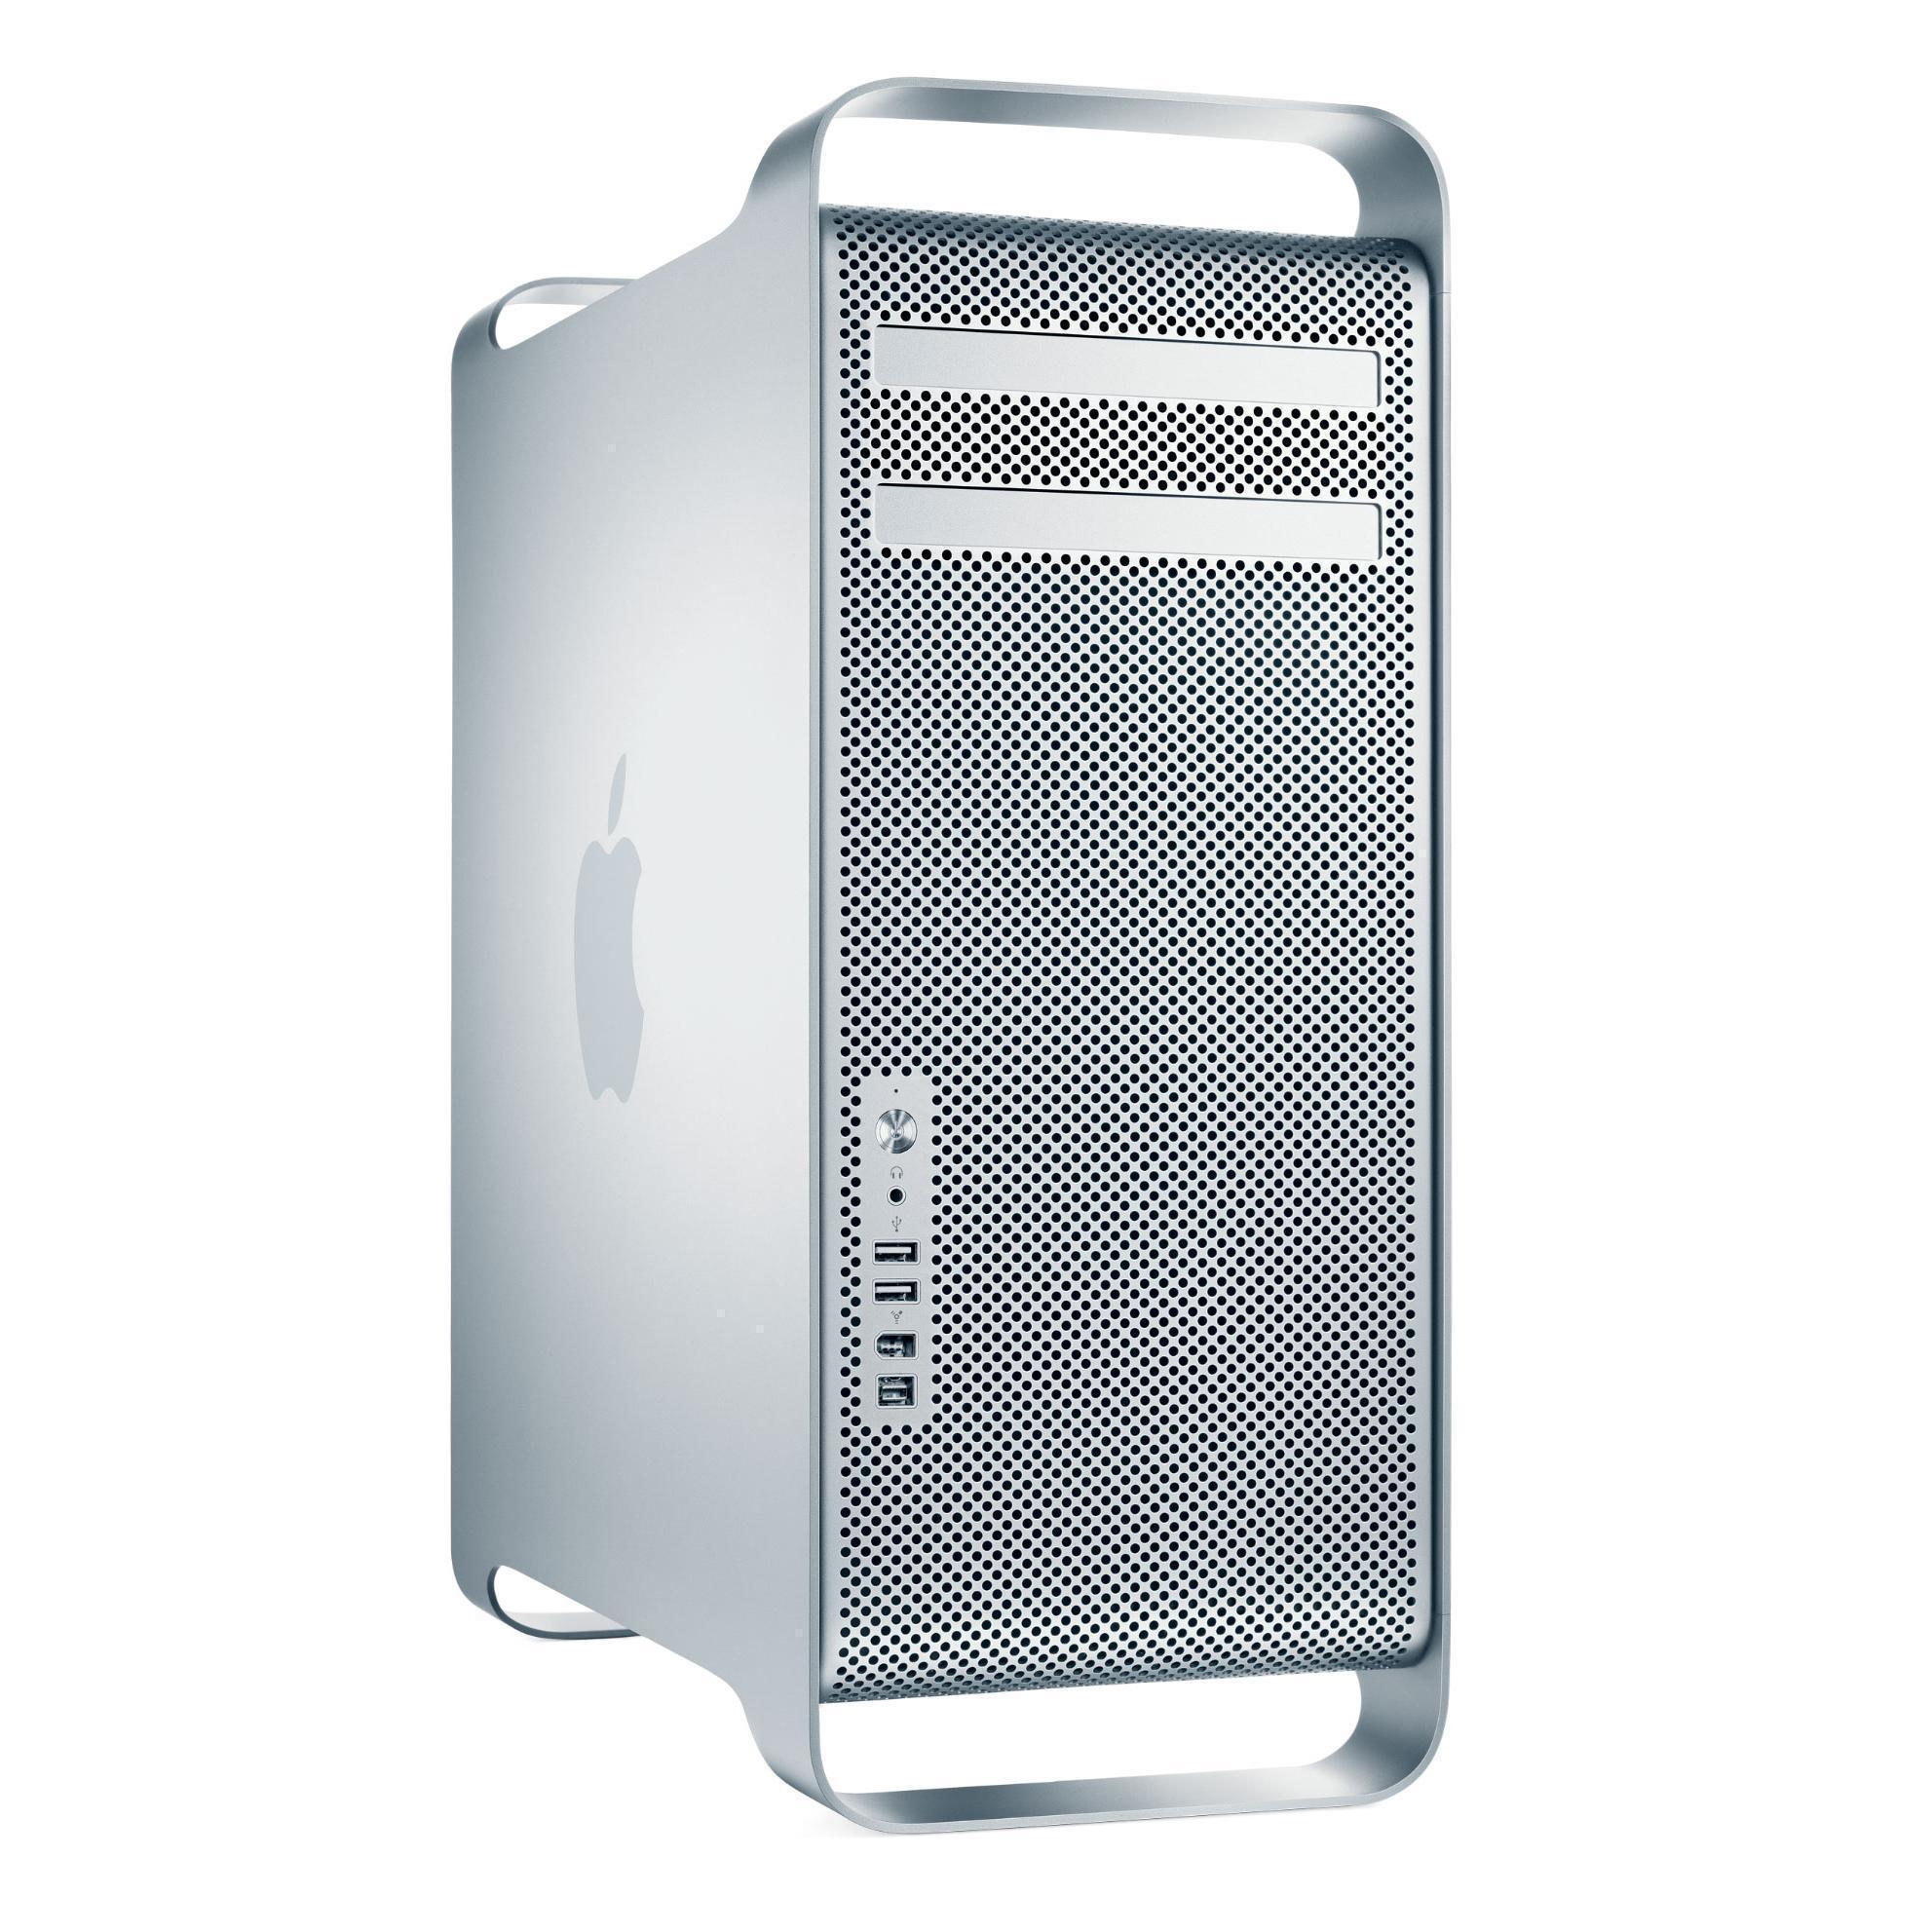 Mac Pro "Eight Core" 3.0 (2,1)